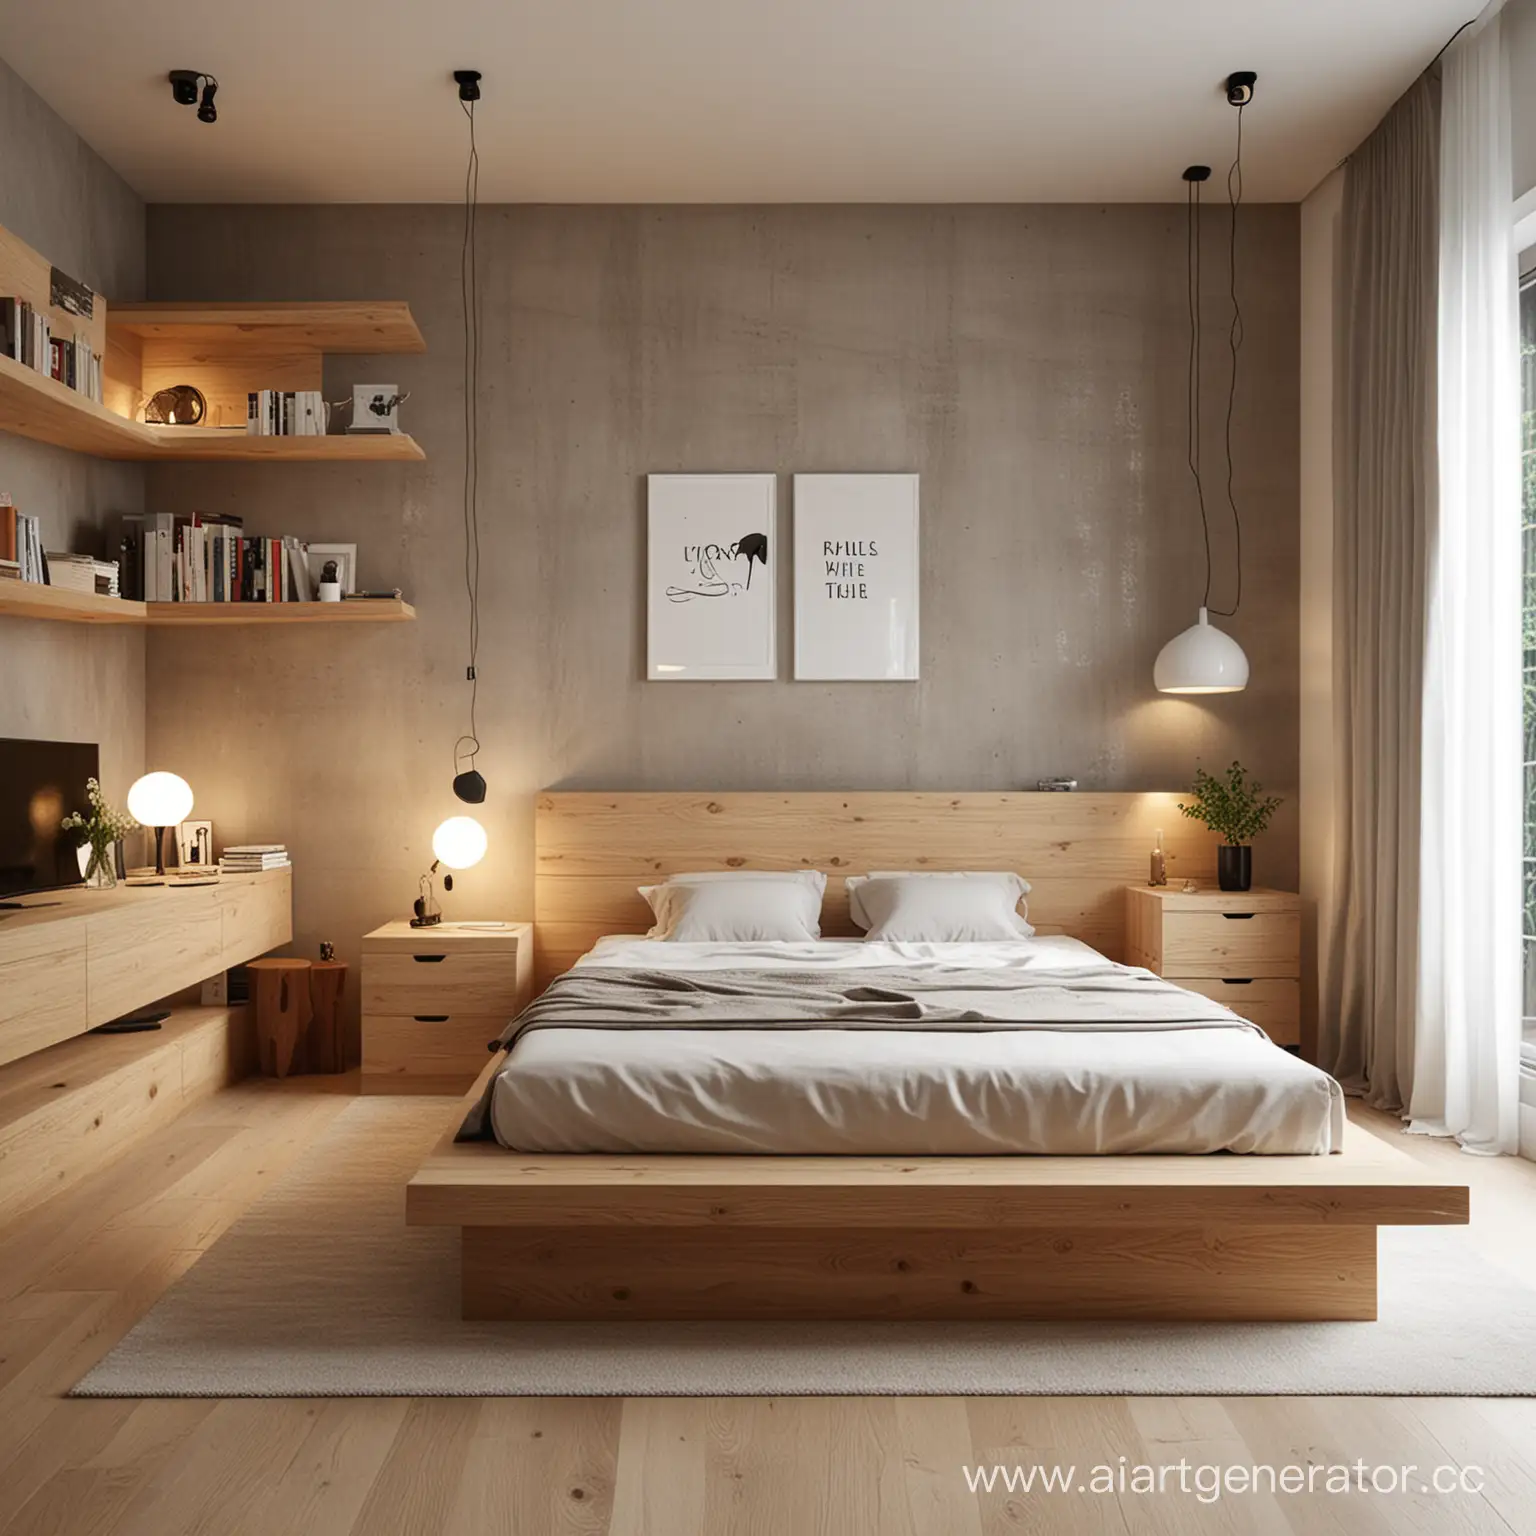 придумай интересный и простой дизайн интерьера мебели в комнате 